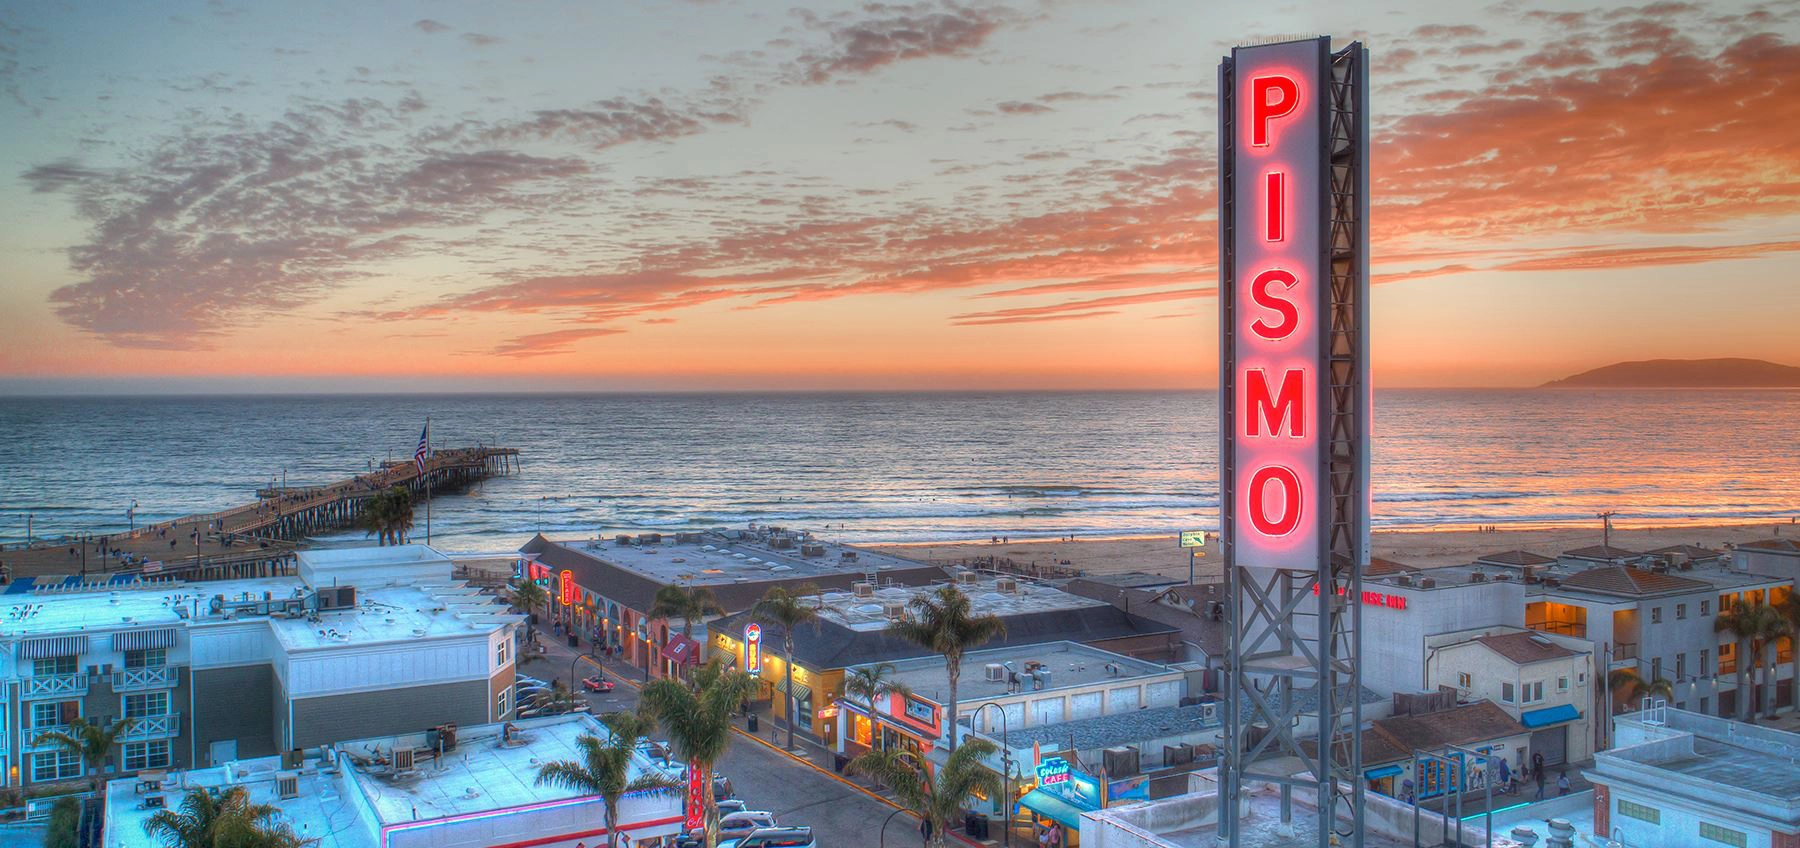  Pismo  strand - West coast of USA